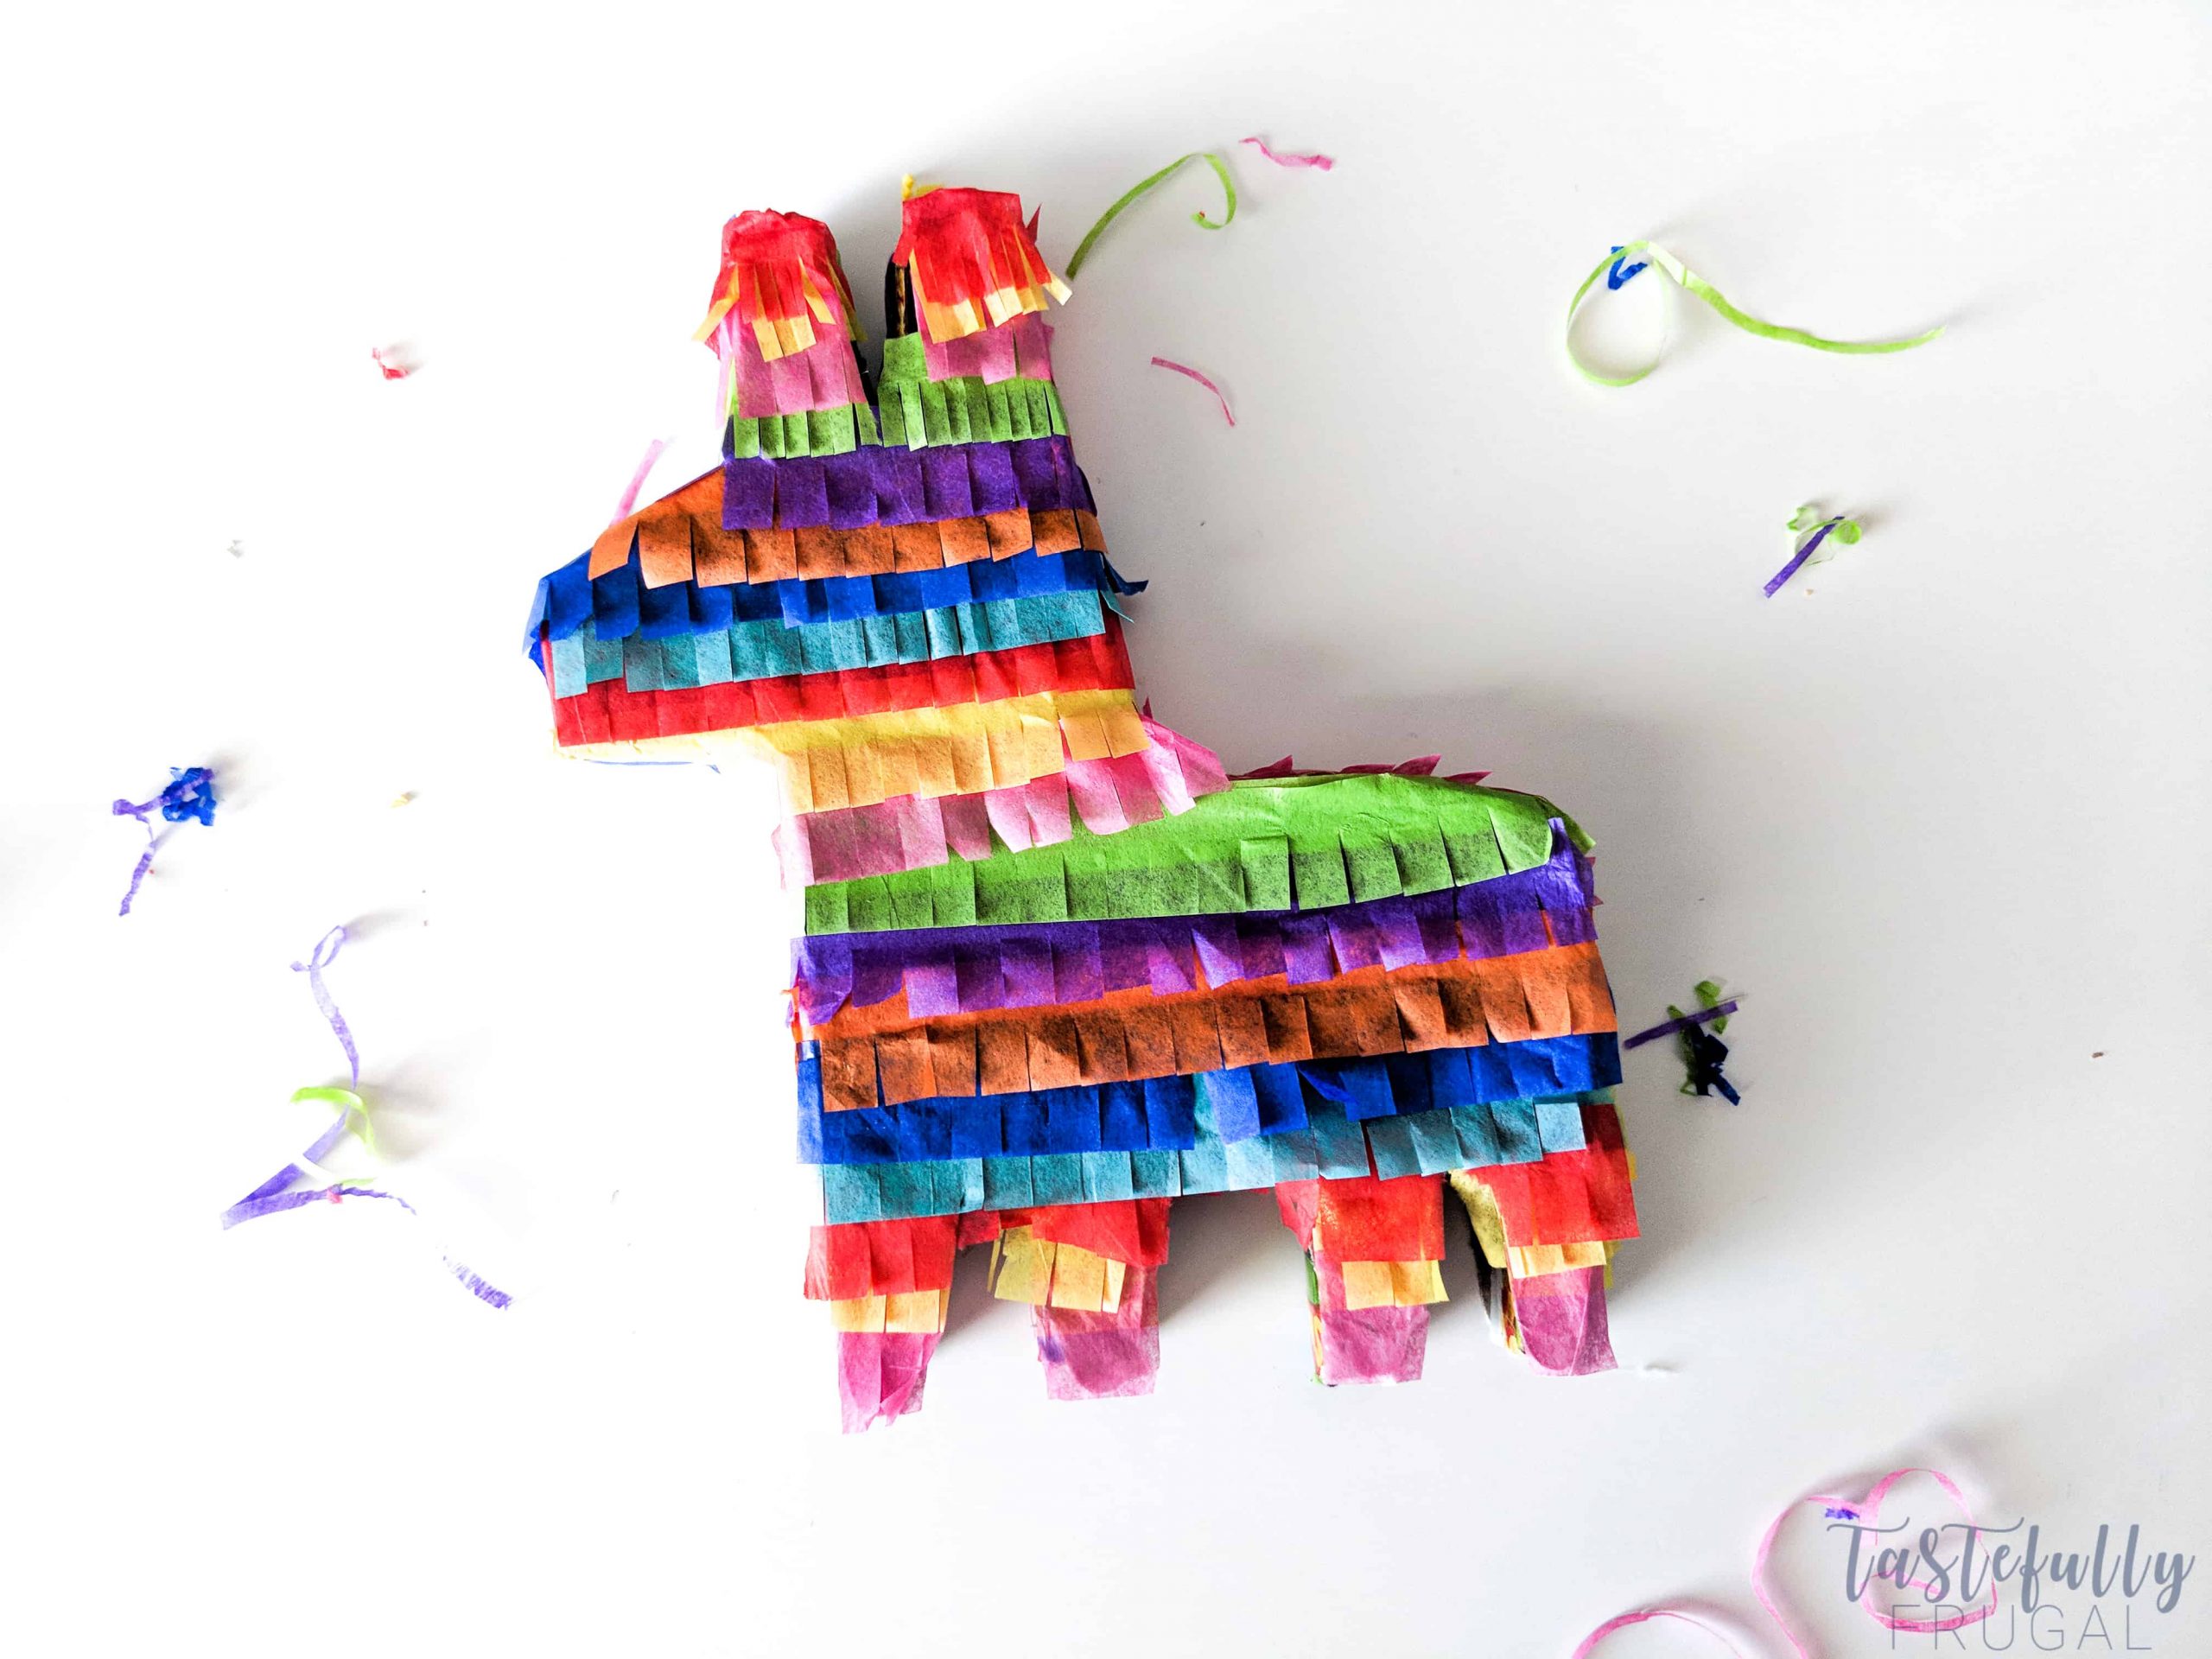 La fábrica de secretos: DIY: Mini piñata